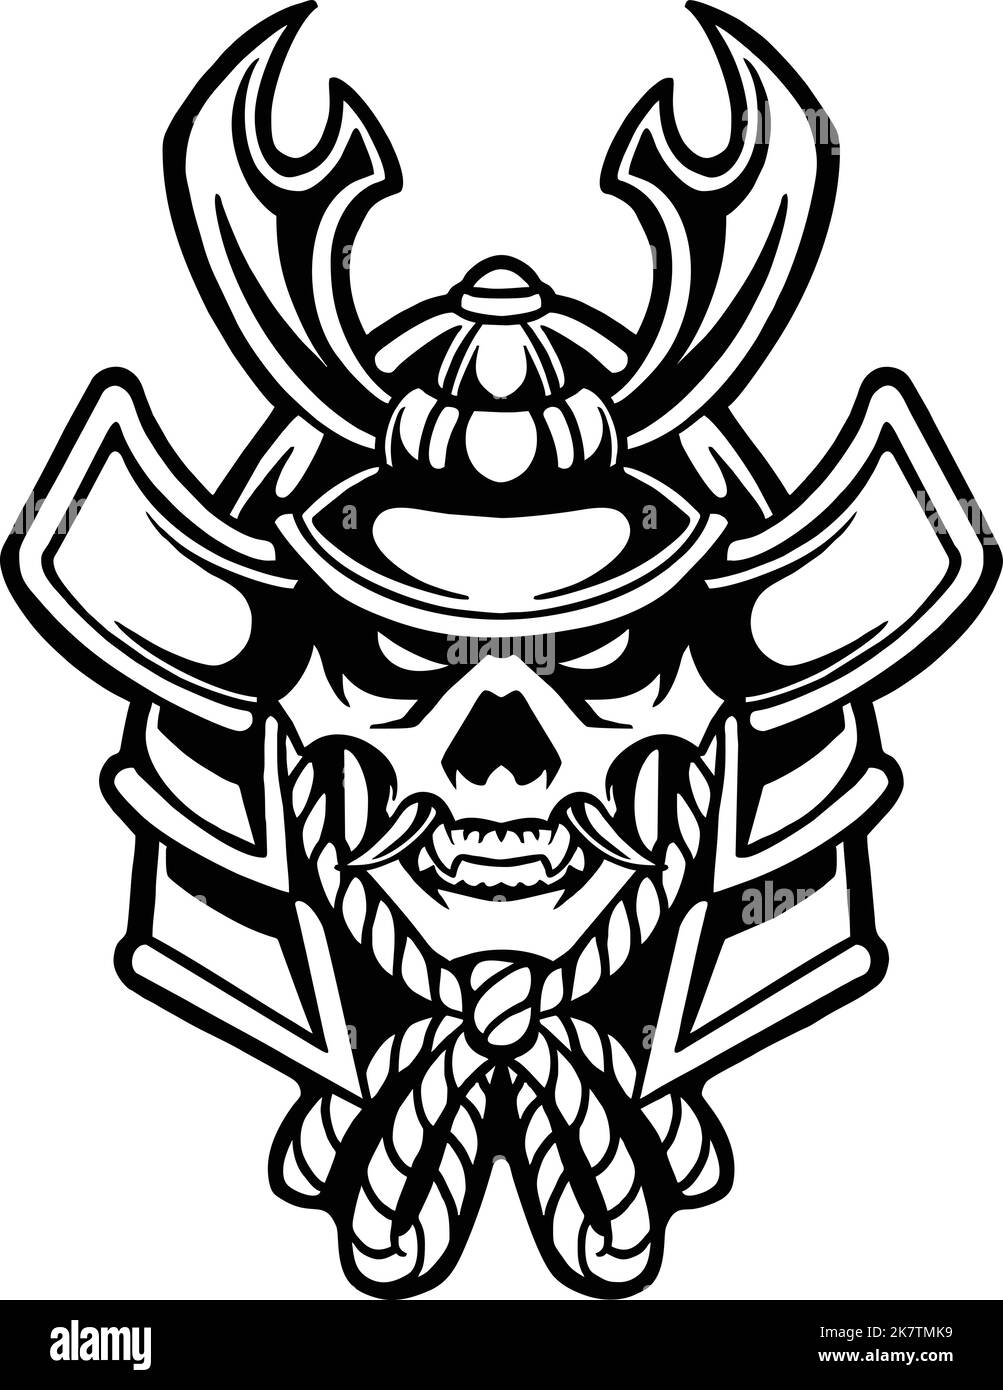 Ronin Samurai Warrior Outline illustrations vectorielles pour votre logo de travail, t-shirt de marchandise, autocollants et étiquettes, affiche, cartes de vœux Illustration de Vecteur